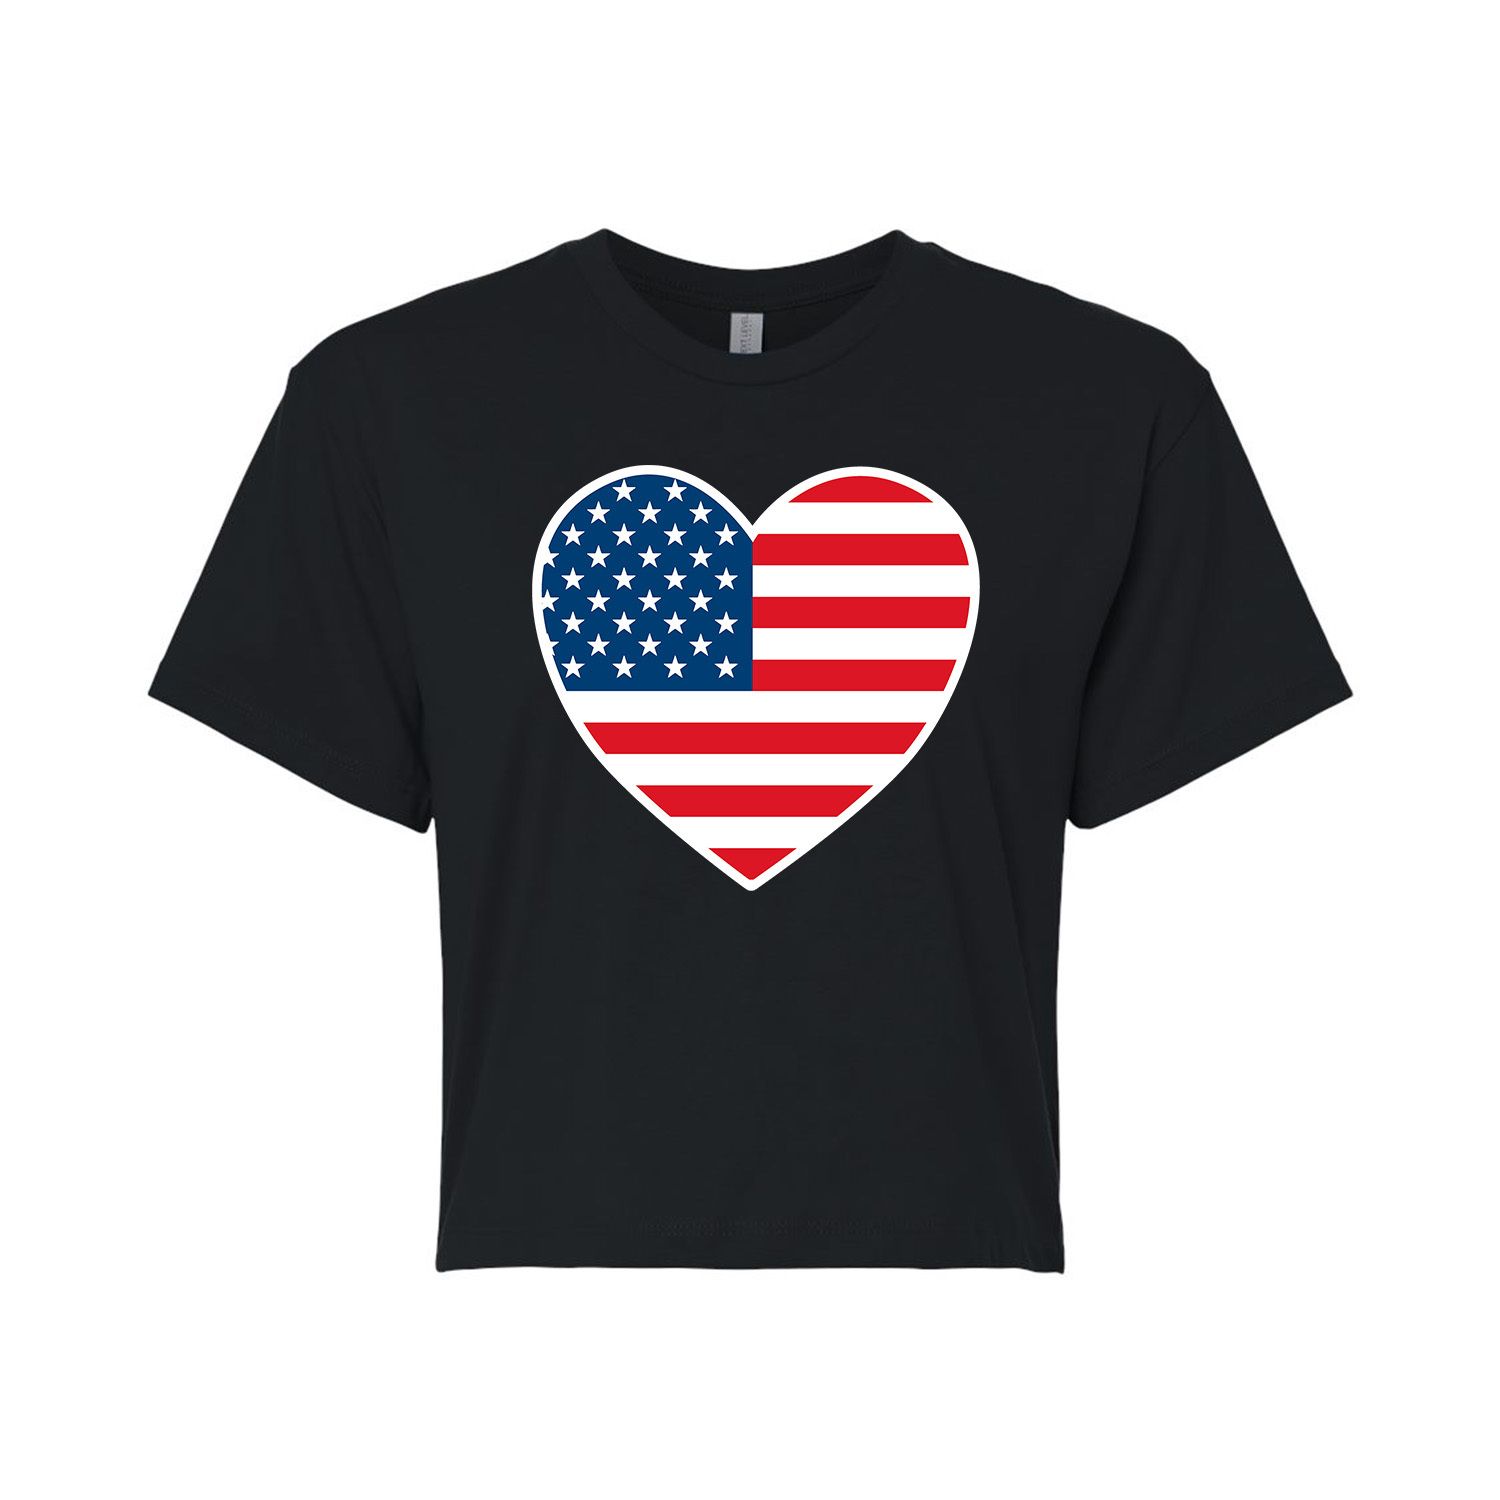 Укороченная футболка с флагом США для юниоров в форме сердца Licensed Character футболка с рисунком в форме сердца с изображением цветов для юниоров licensed character серый